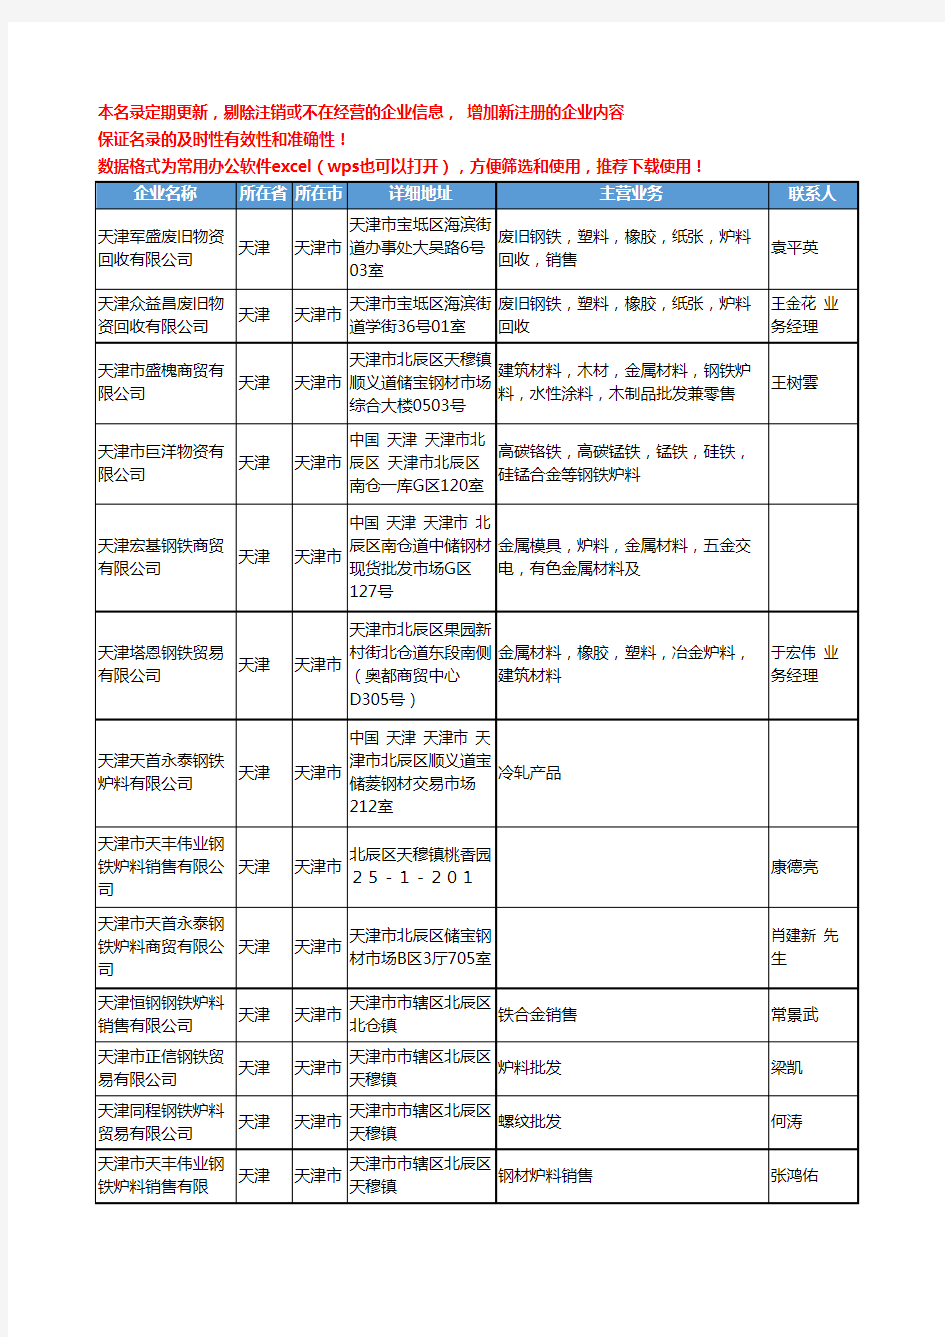 2020新版天津市钢铁炉料工商企业公司名录名单黄页大全43家